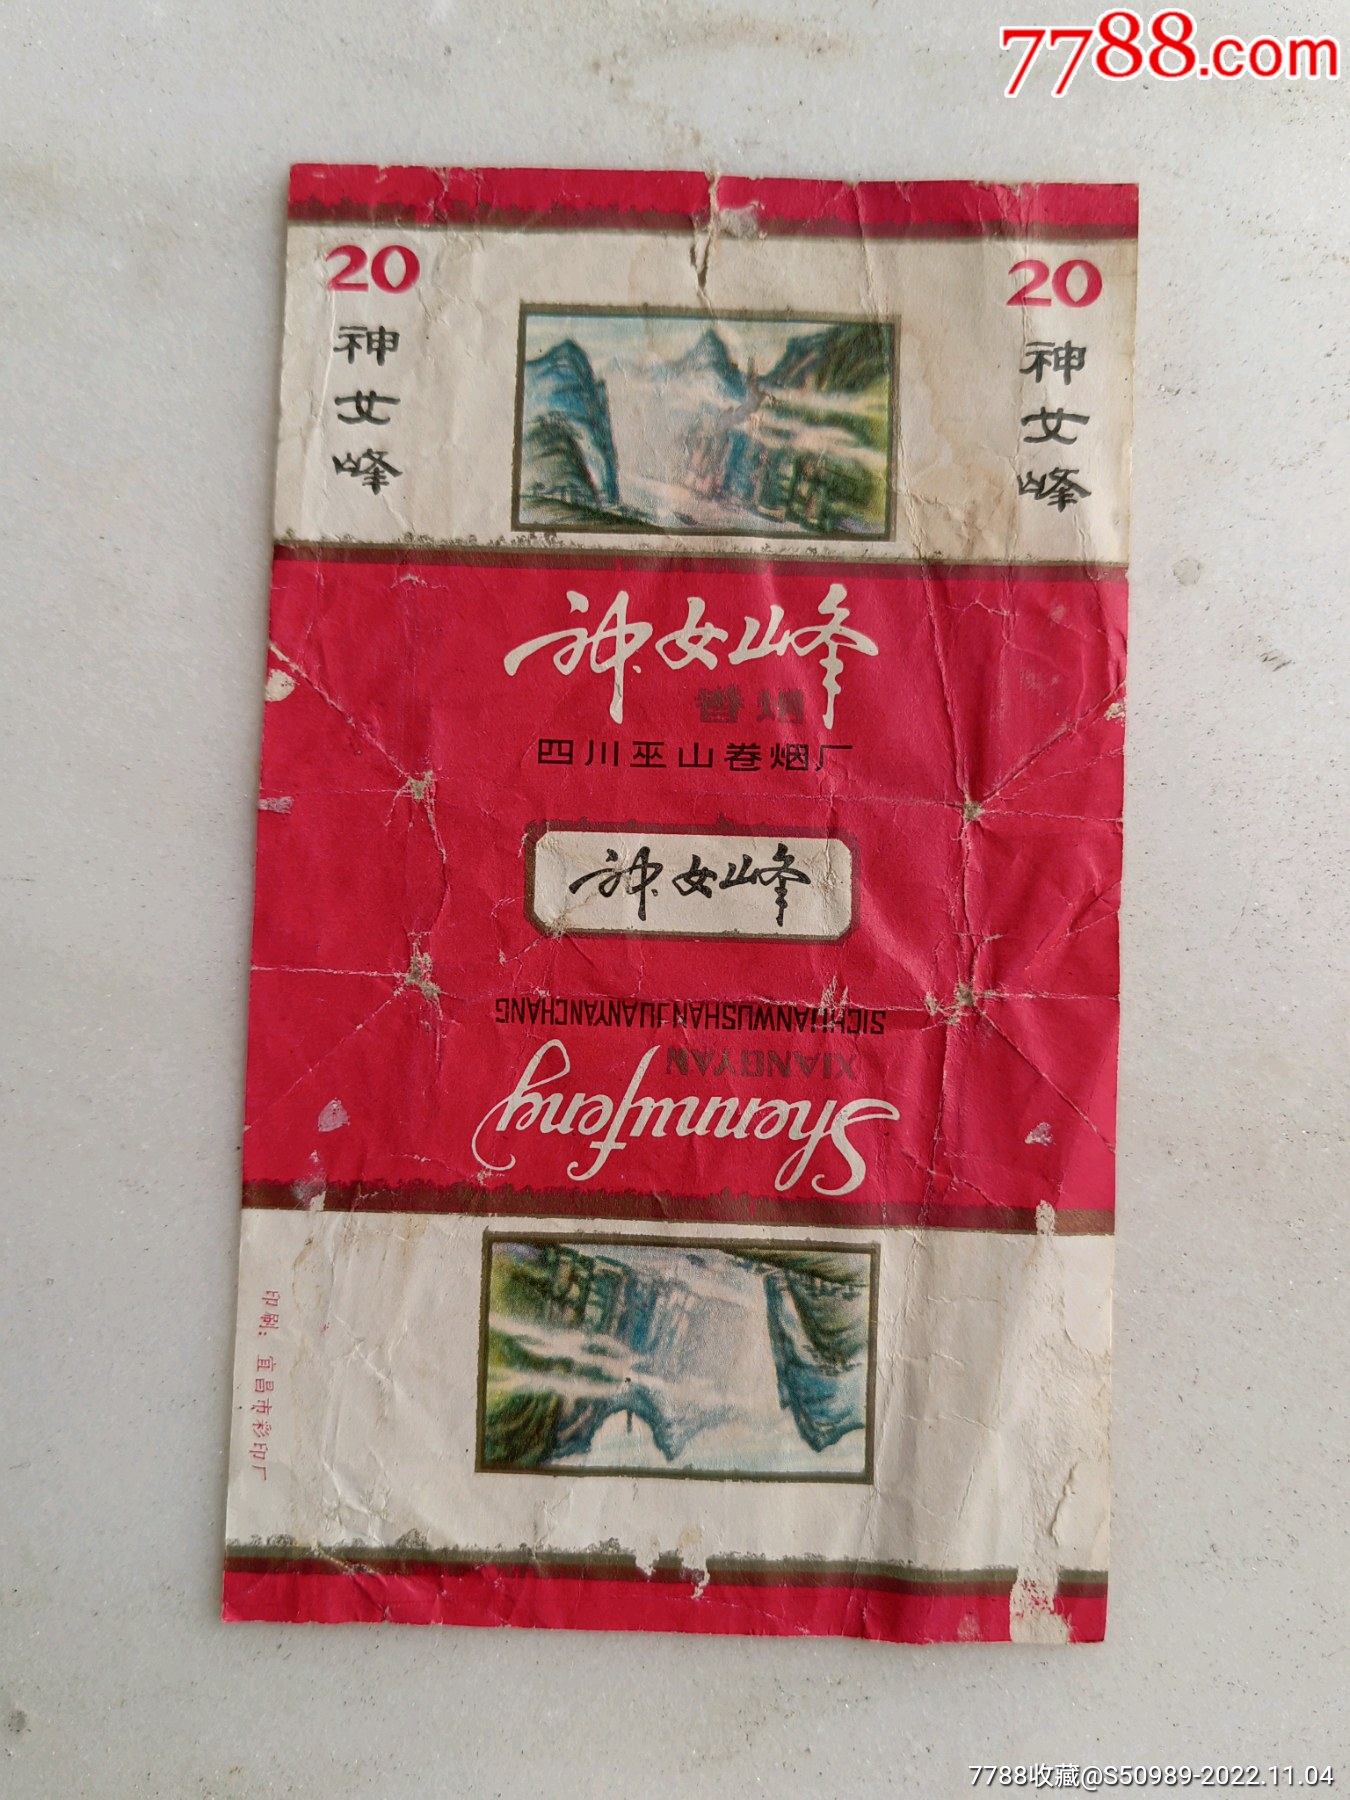 三D------纪念版------四五十年前日本出的寿烟---峰-价格:35元-au32055244-烟标/烟盒 -加价-7788收藏__收藏热线